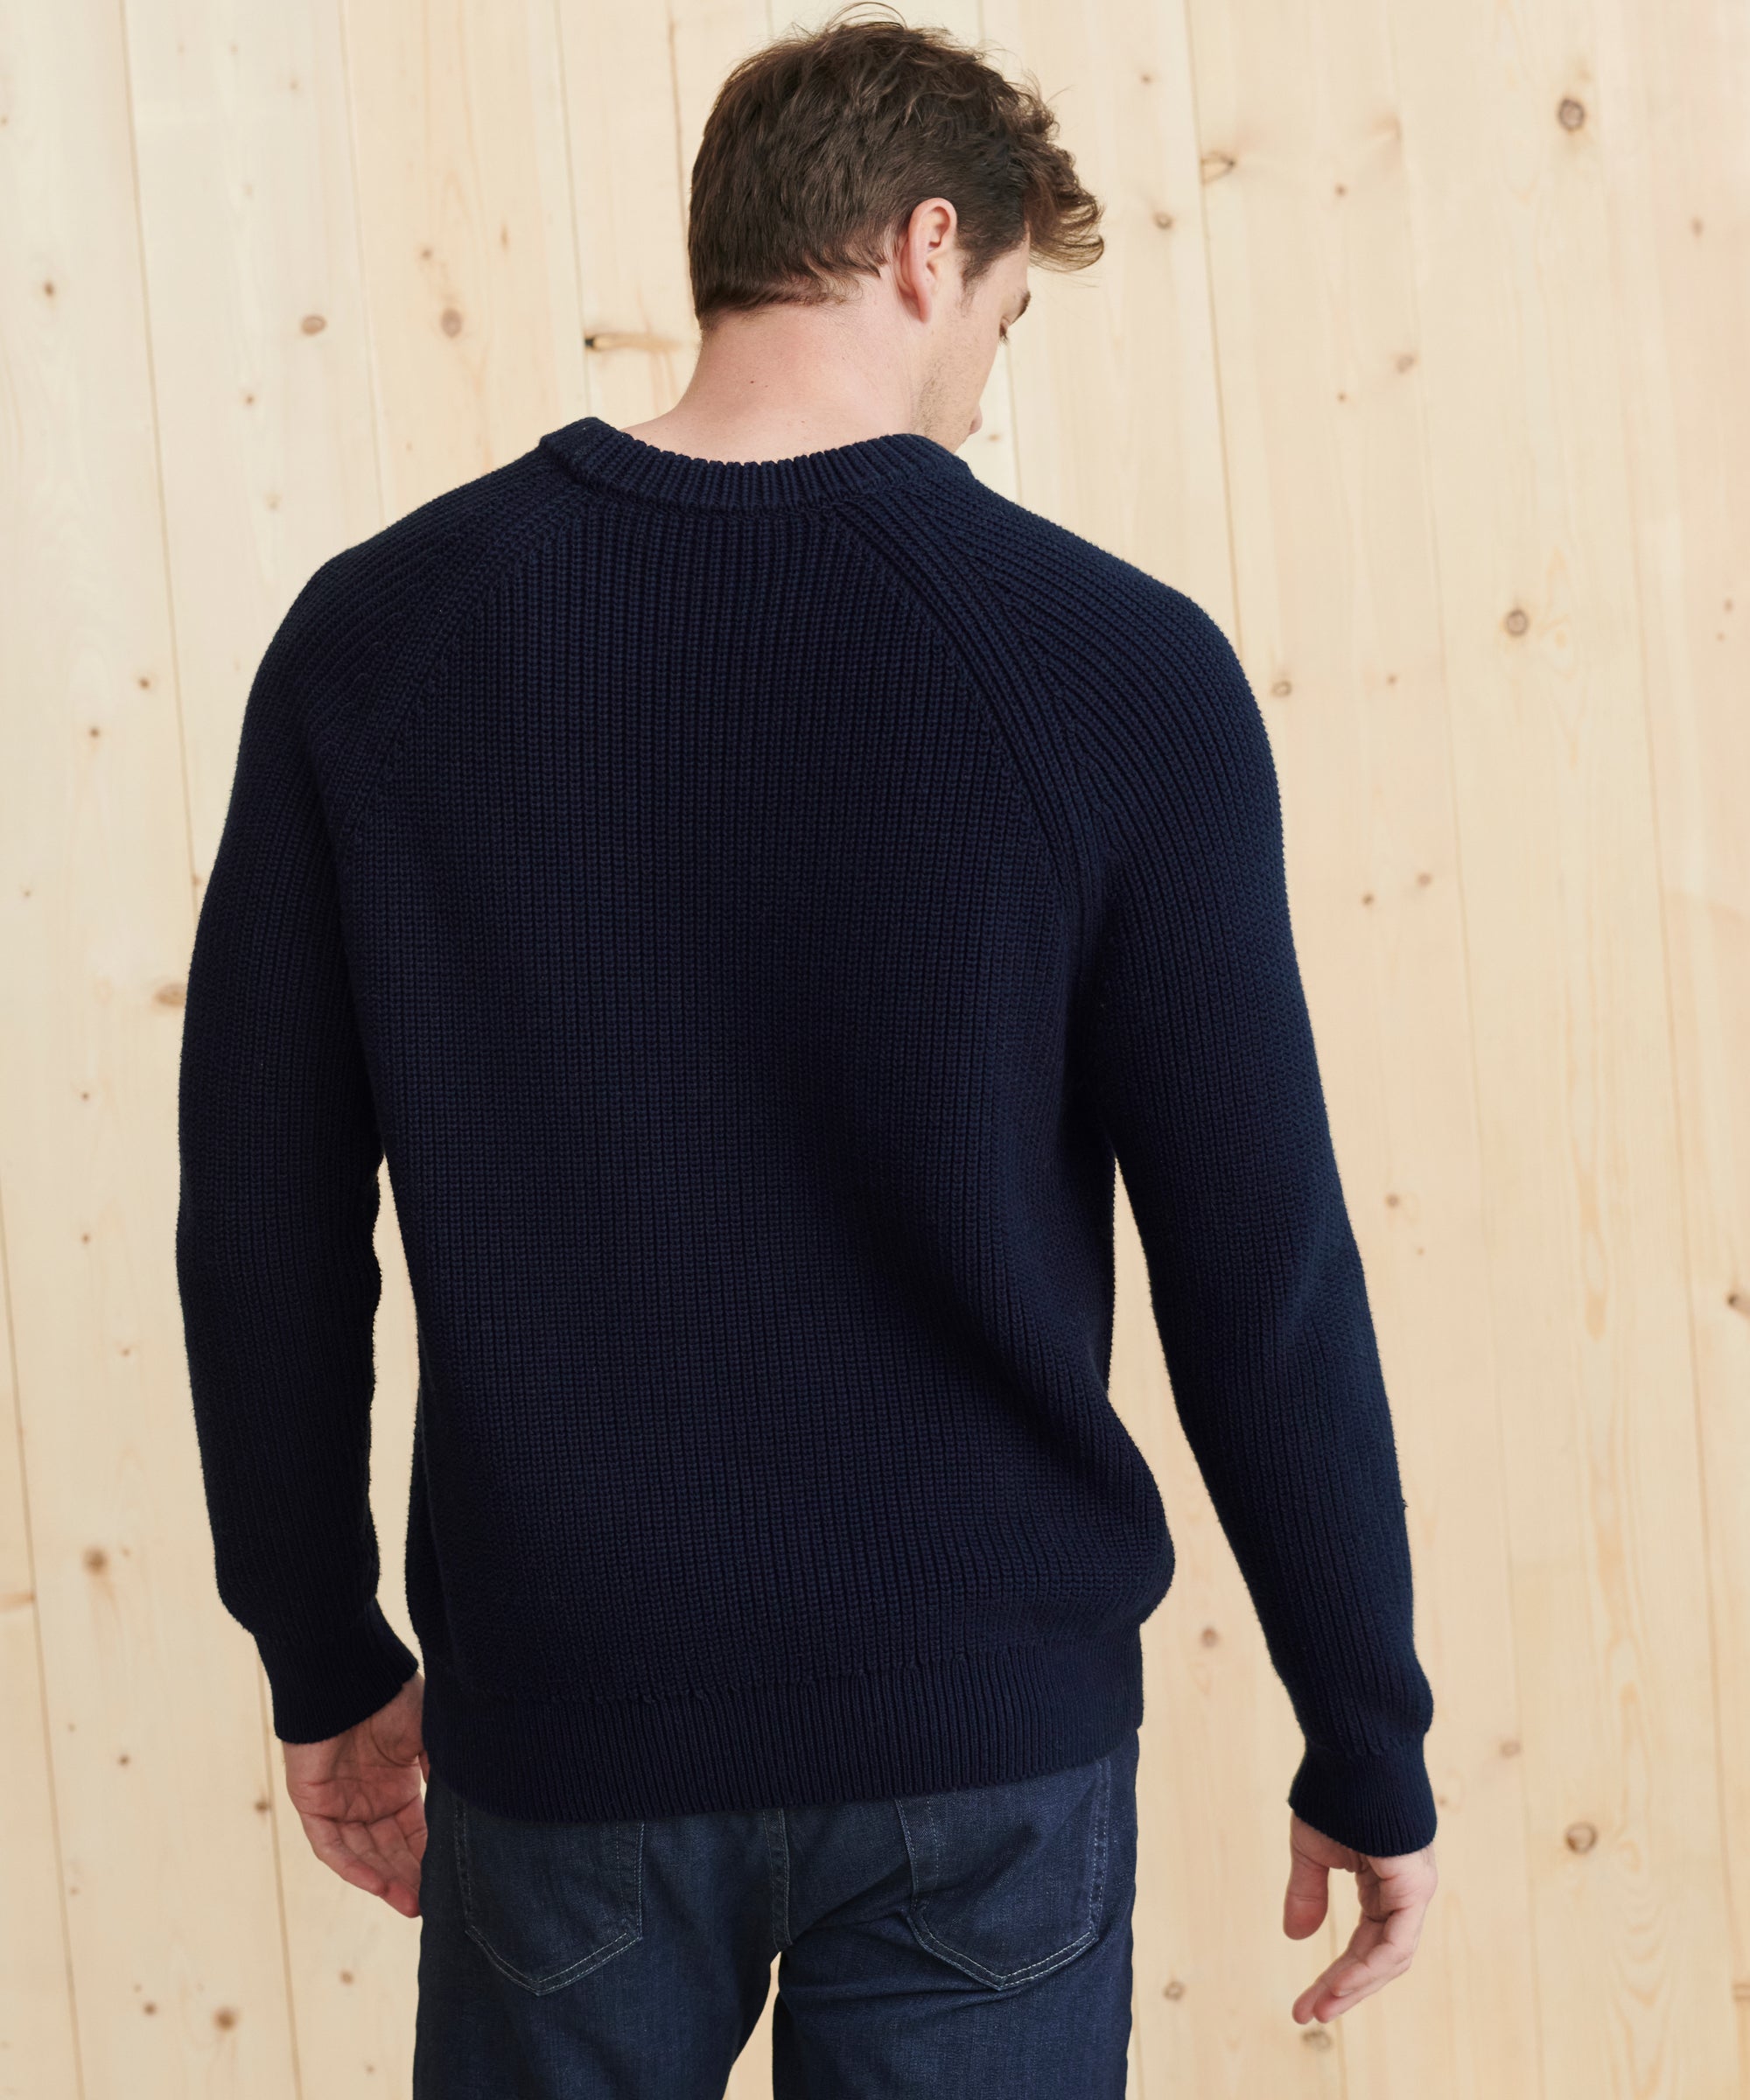 Men'S Fisherman Sweater  Buy Online - Best Price in Nigeria